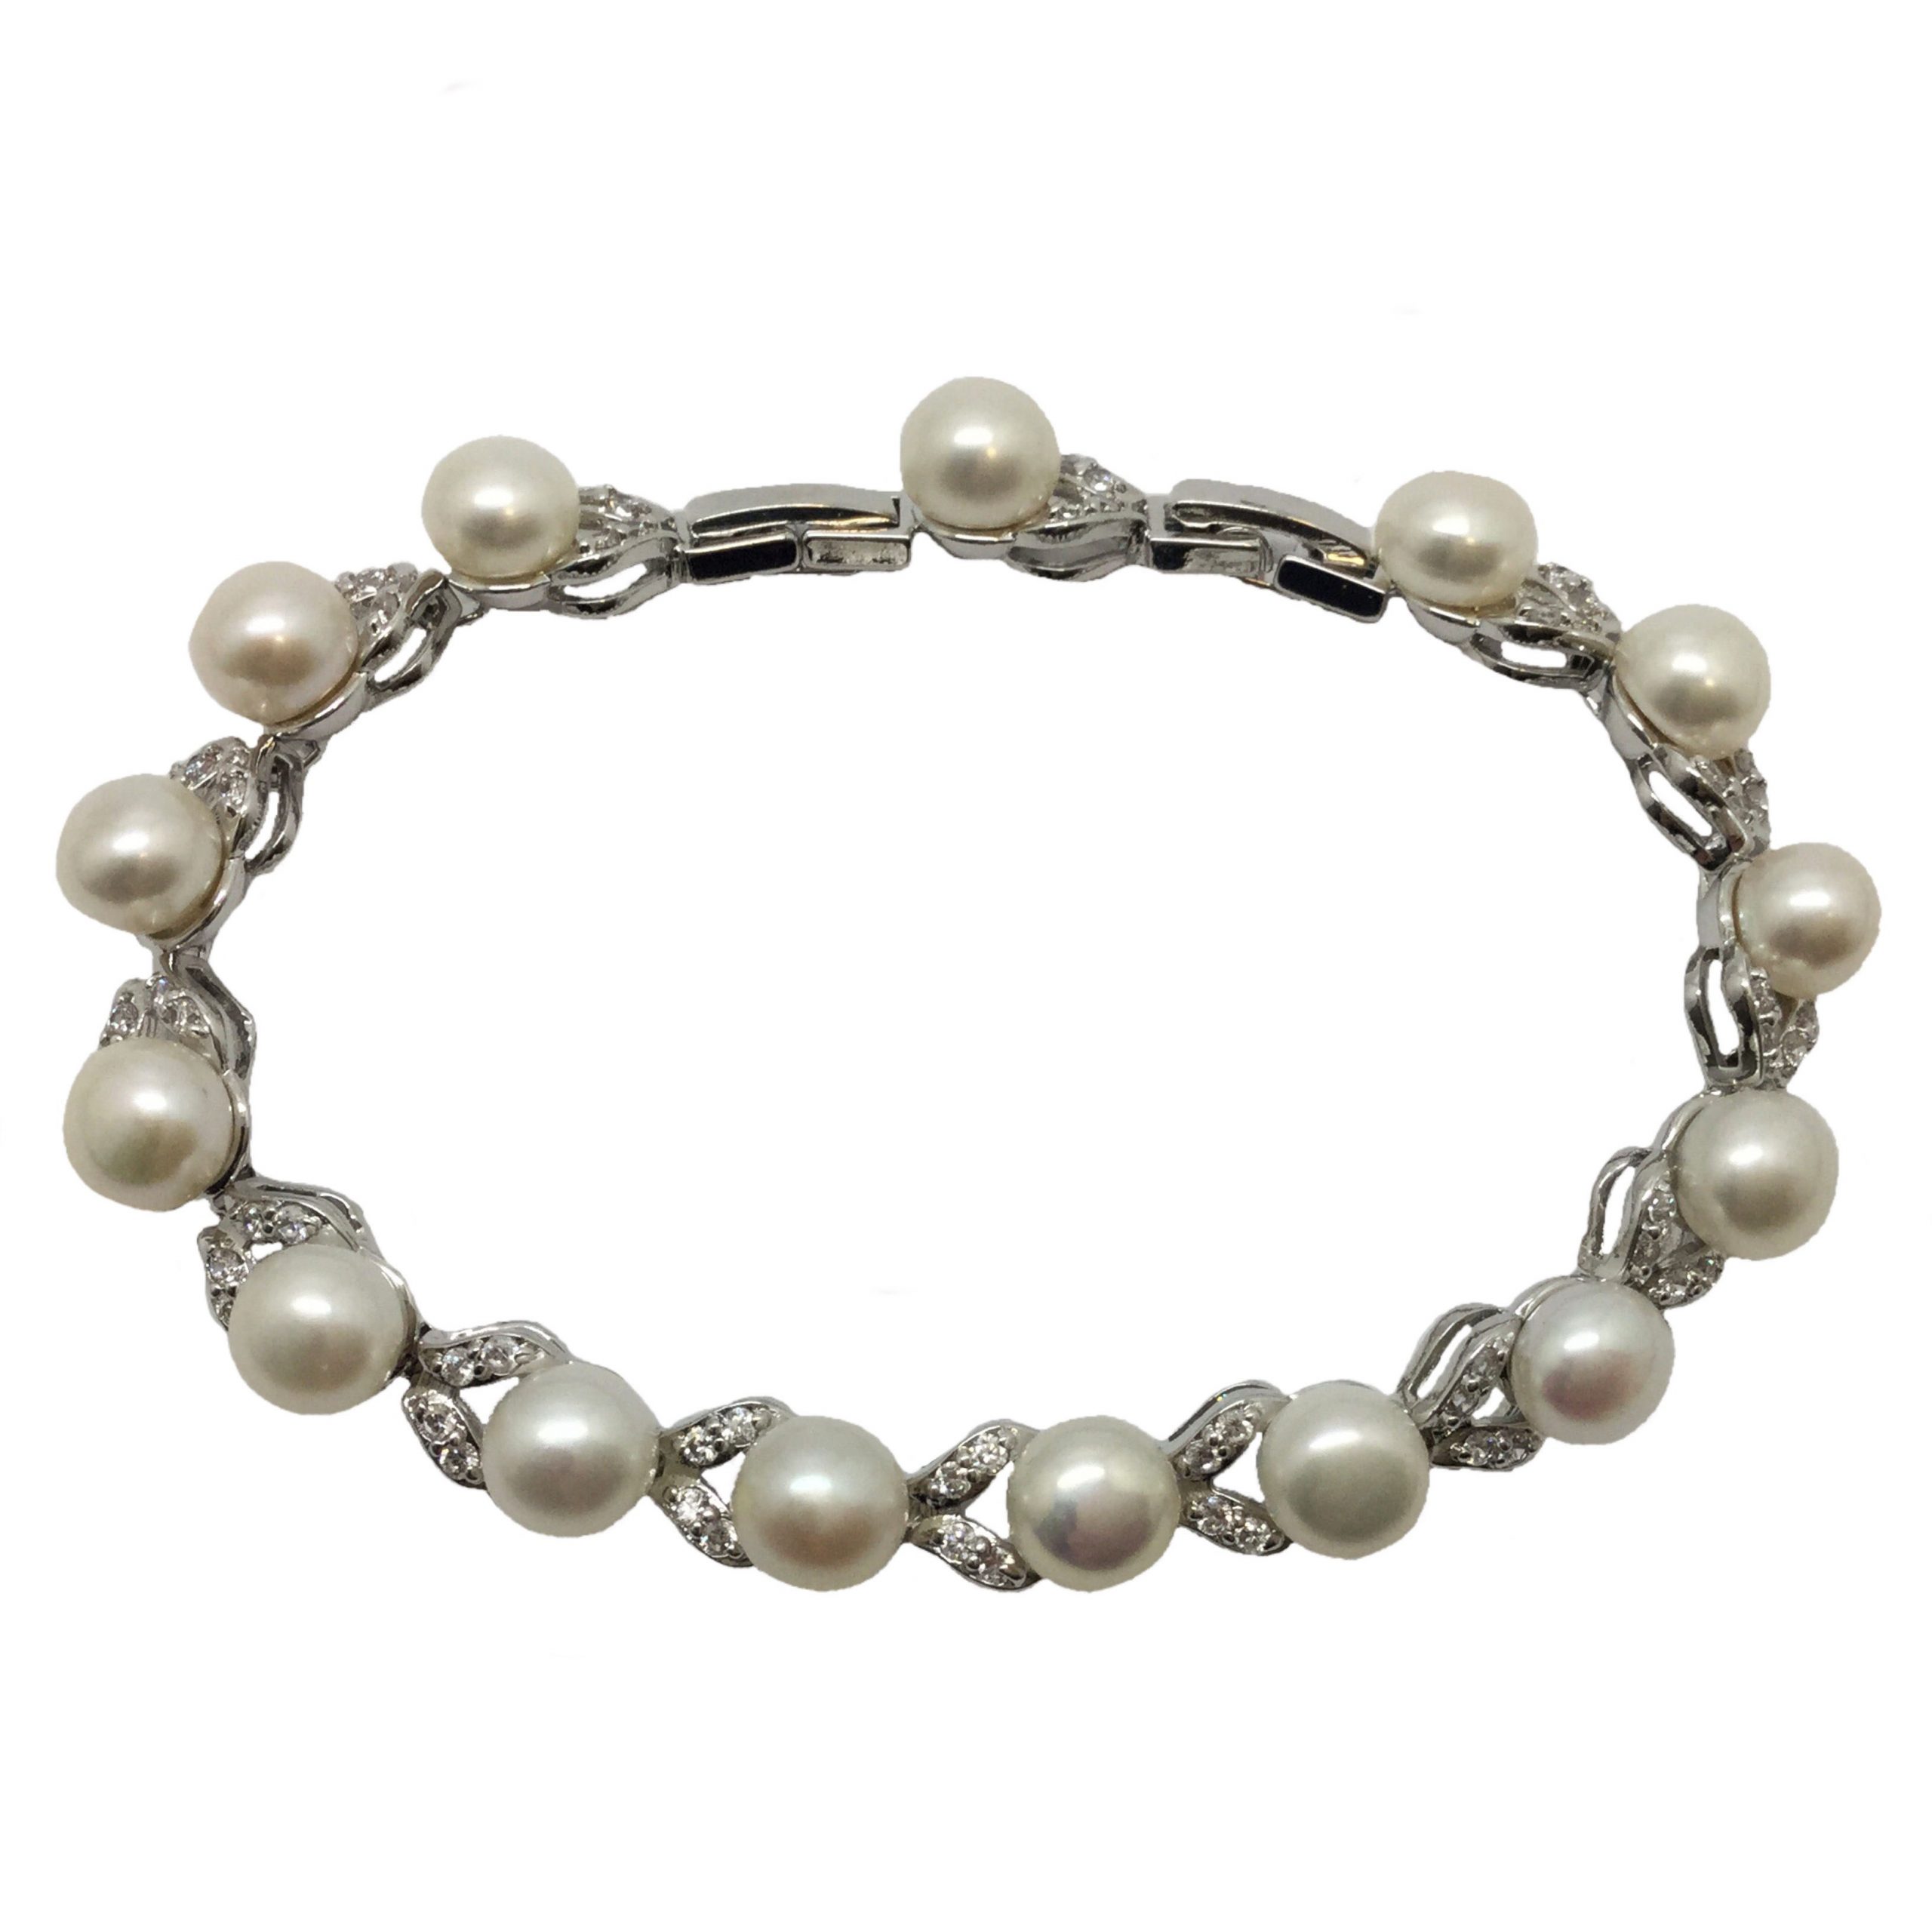 Silver Pearl Bracelet|Evie|Jeanette Maree|Shop Online